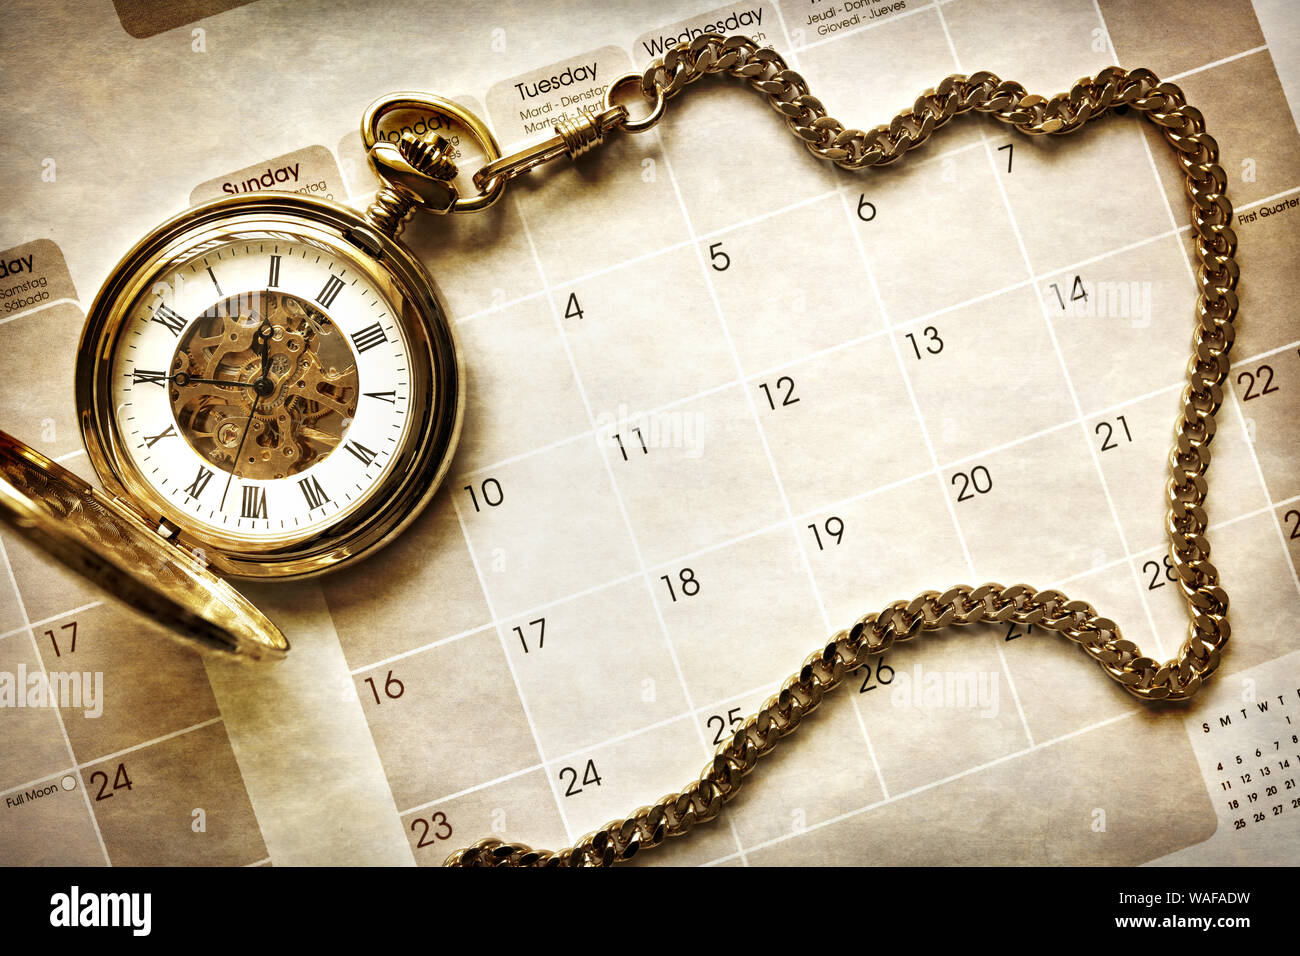 La gestión del tiempo, reloj de bolsillo de oro sobre fondo de calendario en blanco Foto de stock